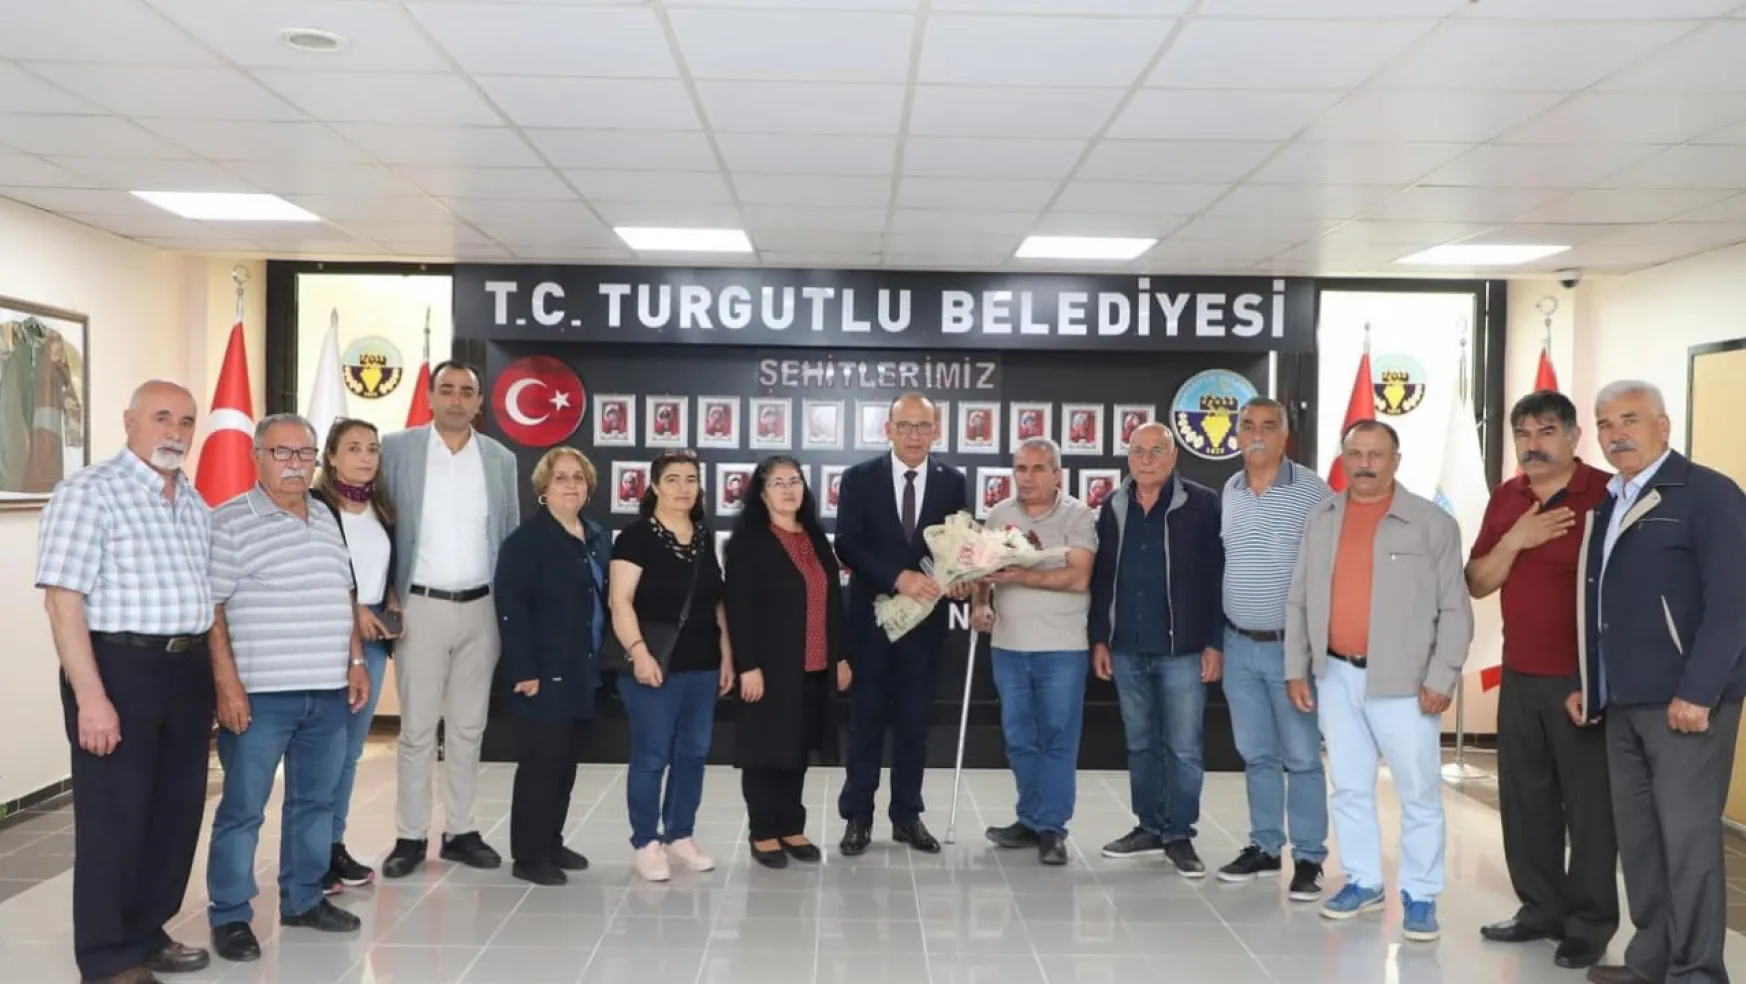 Turgutlu Belediye Başkanı Çetin Akın'a Seçim Sonrası Yoğun Ziyaretler